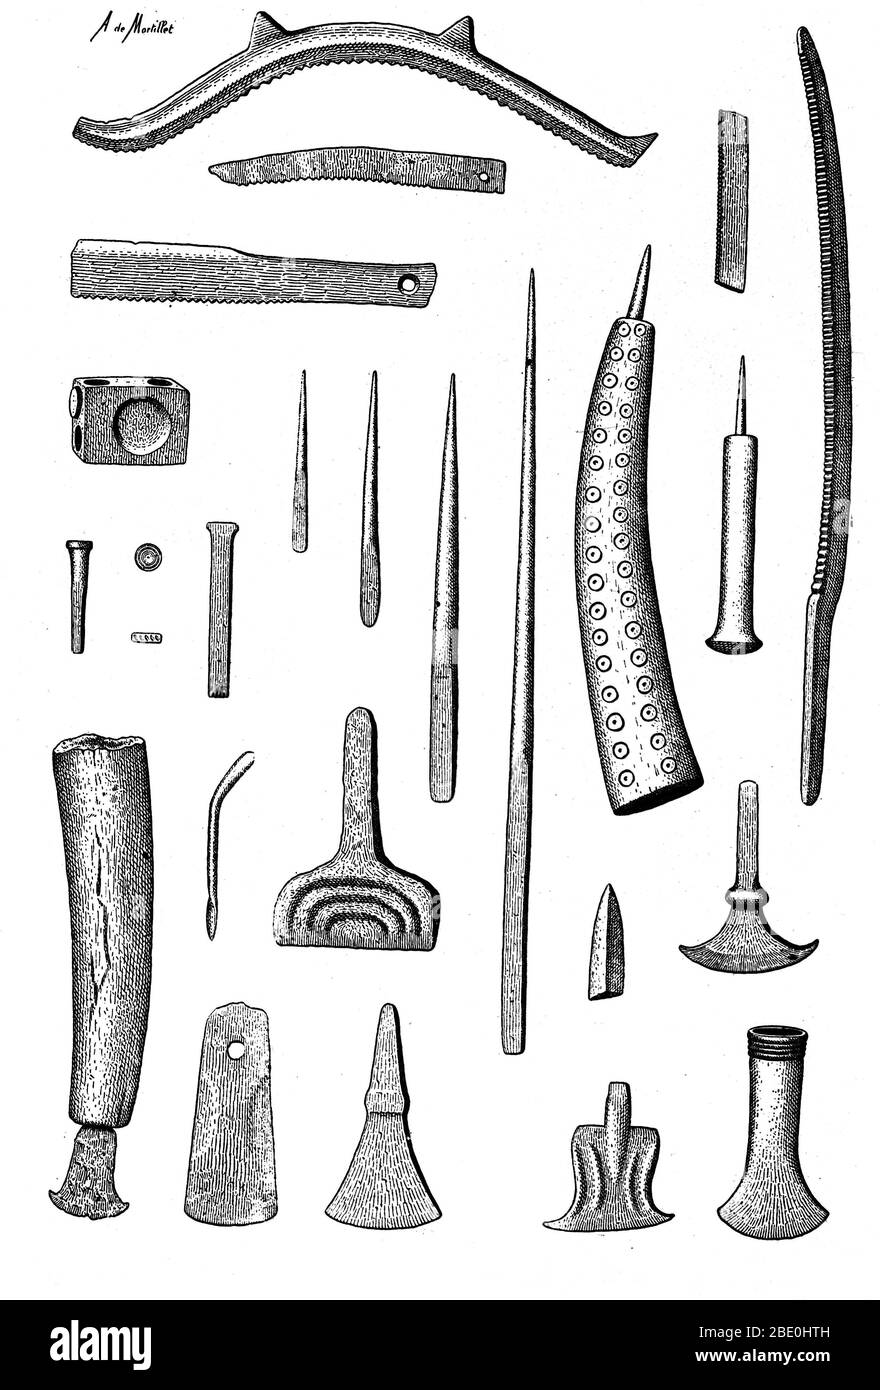 Outils européens de l'âge du bronze tardif, tels que marteaux, burins, gouges et scies, c. 3200 à 600 av. J.-C. Banque D'Images